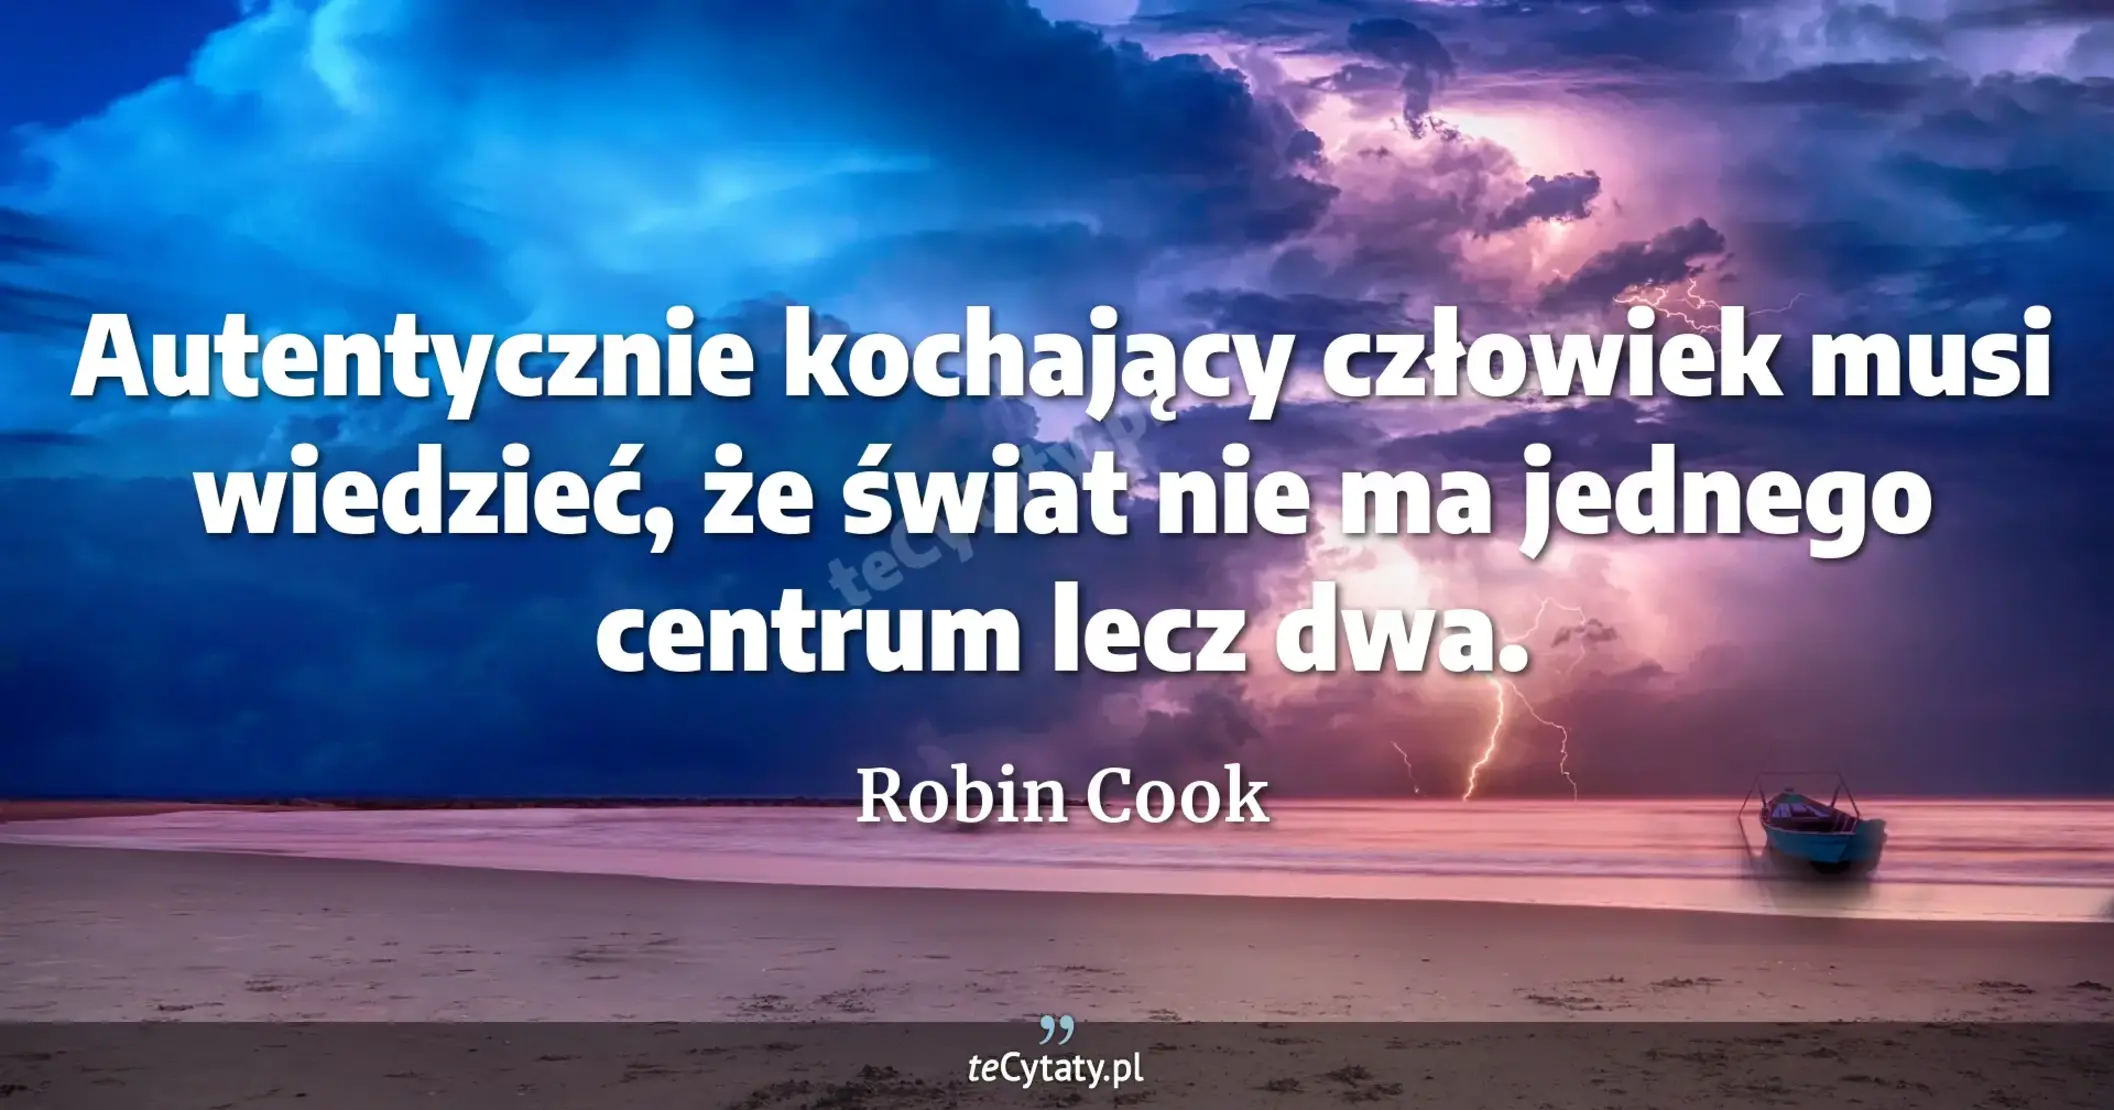 Autentycznie kochający człowiek musi wiedzieć, że świat nie ma jednego centrum lecz dwa. - Robin Cook